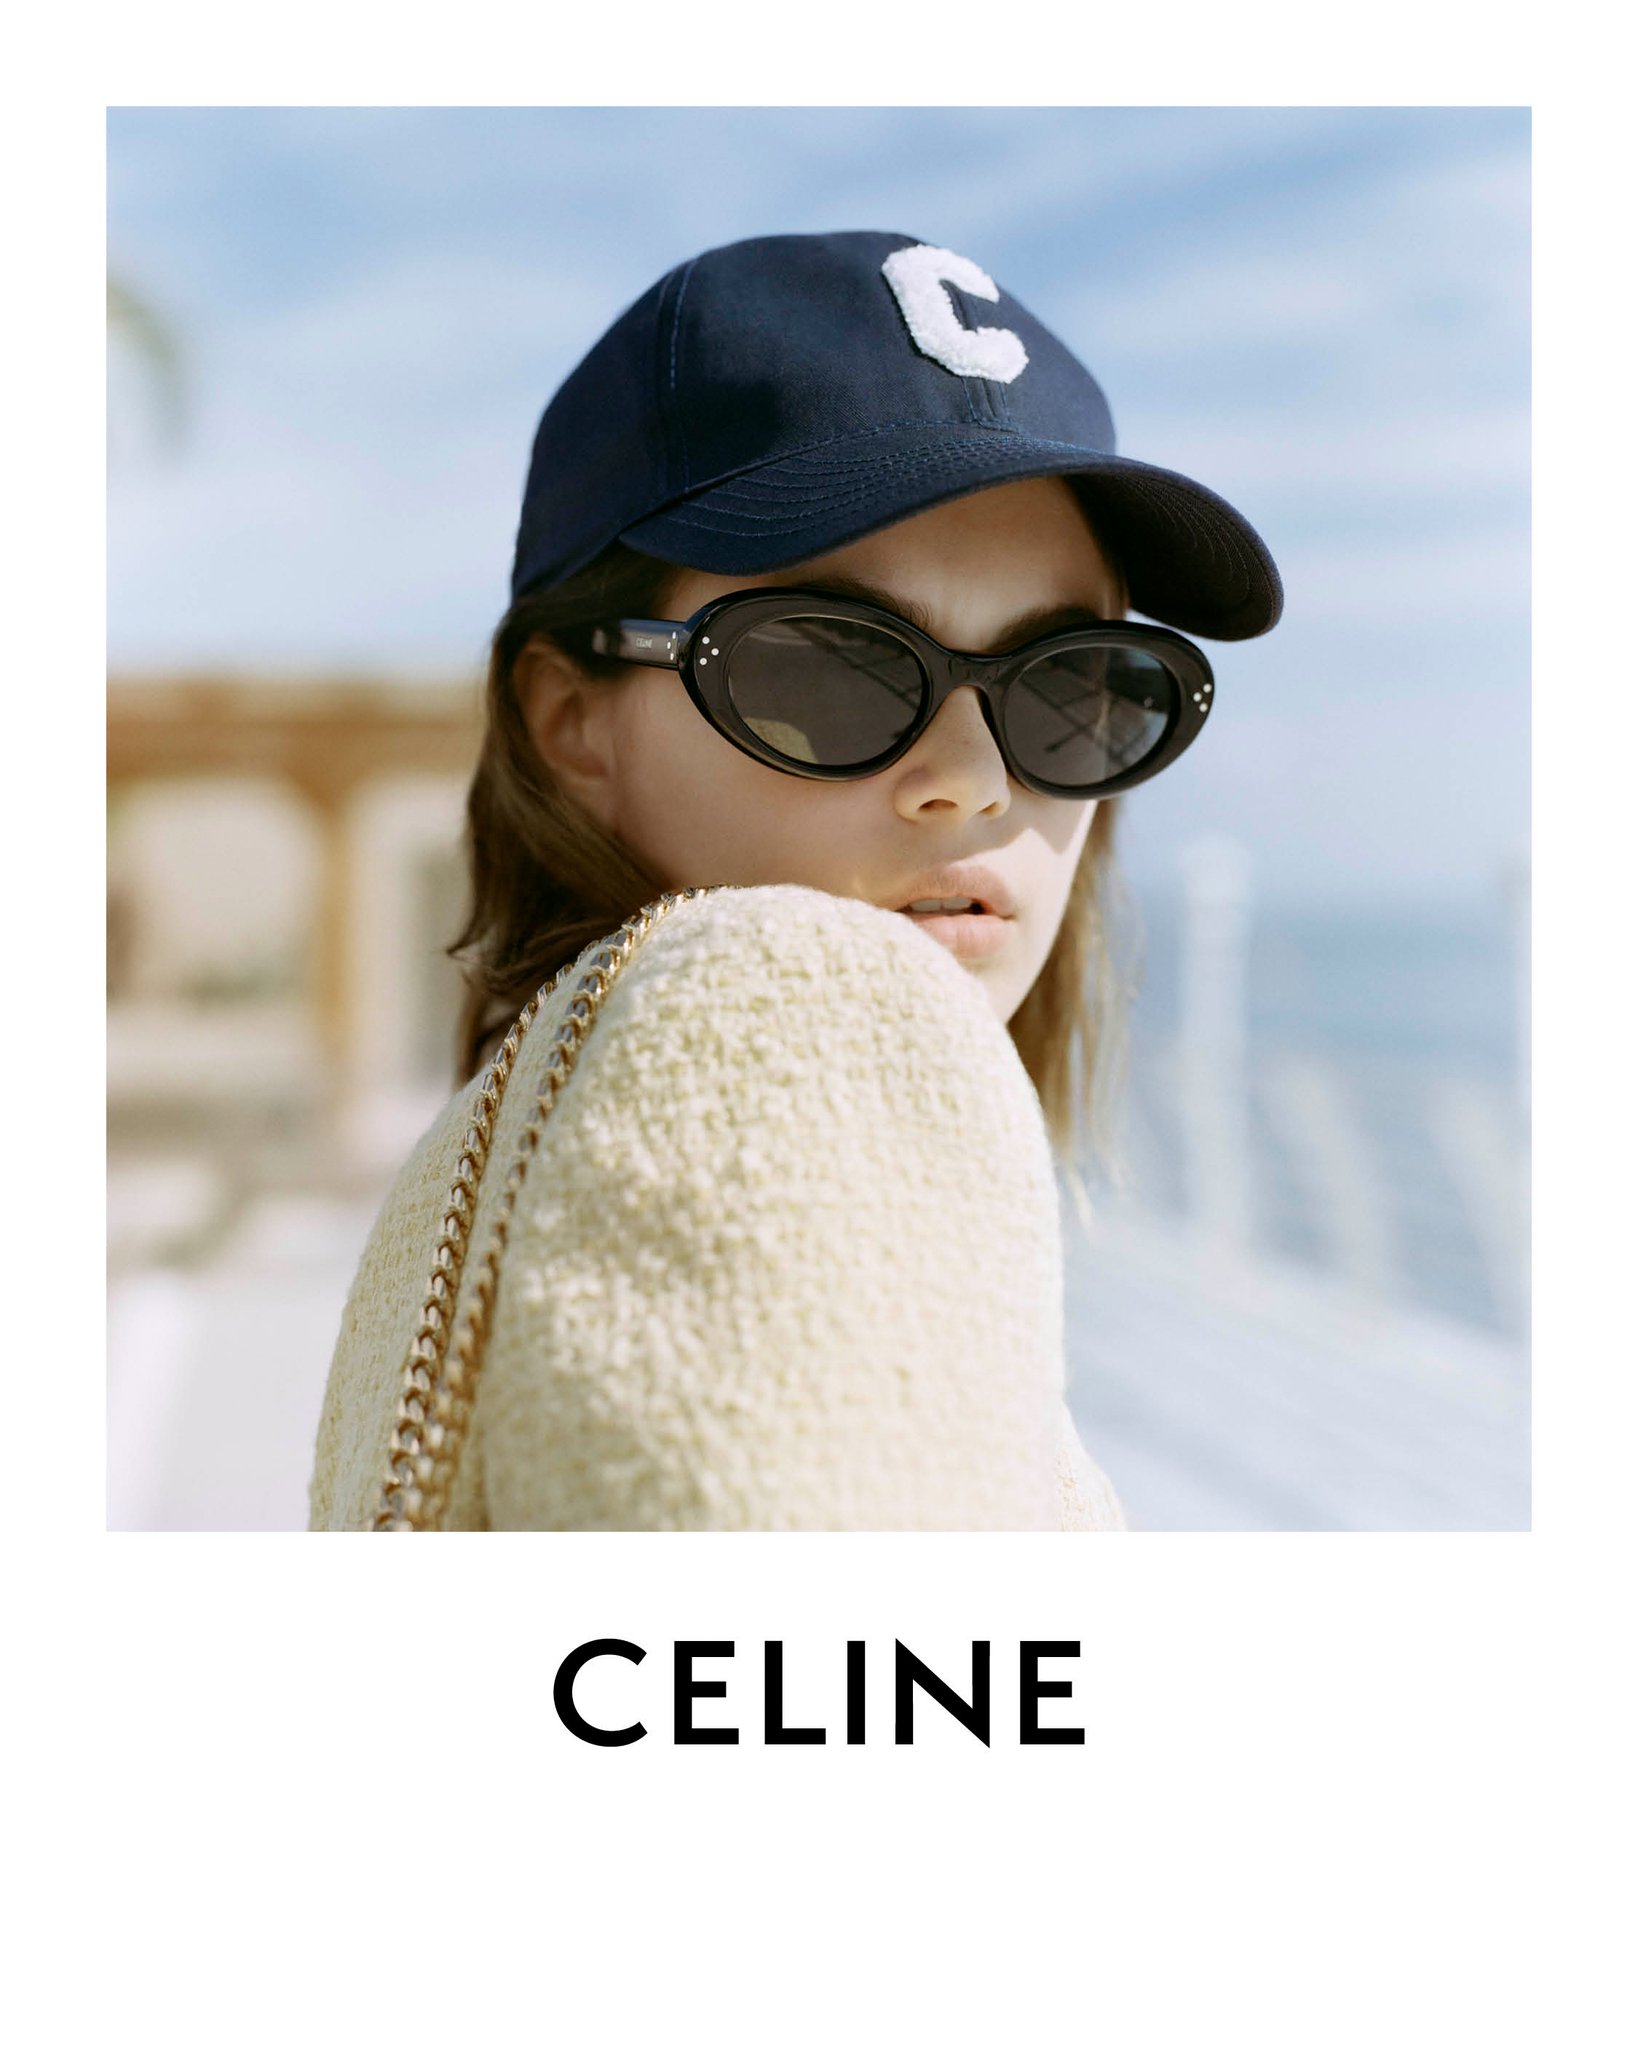 Chanel & Celine Baseball Cap Tan: La cima del estilo incomparable.